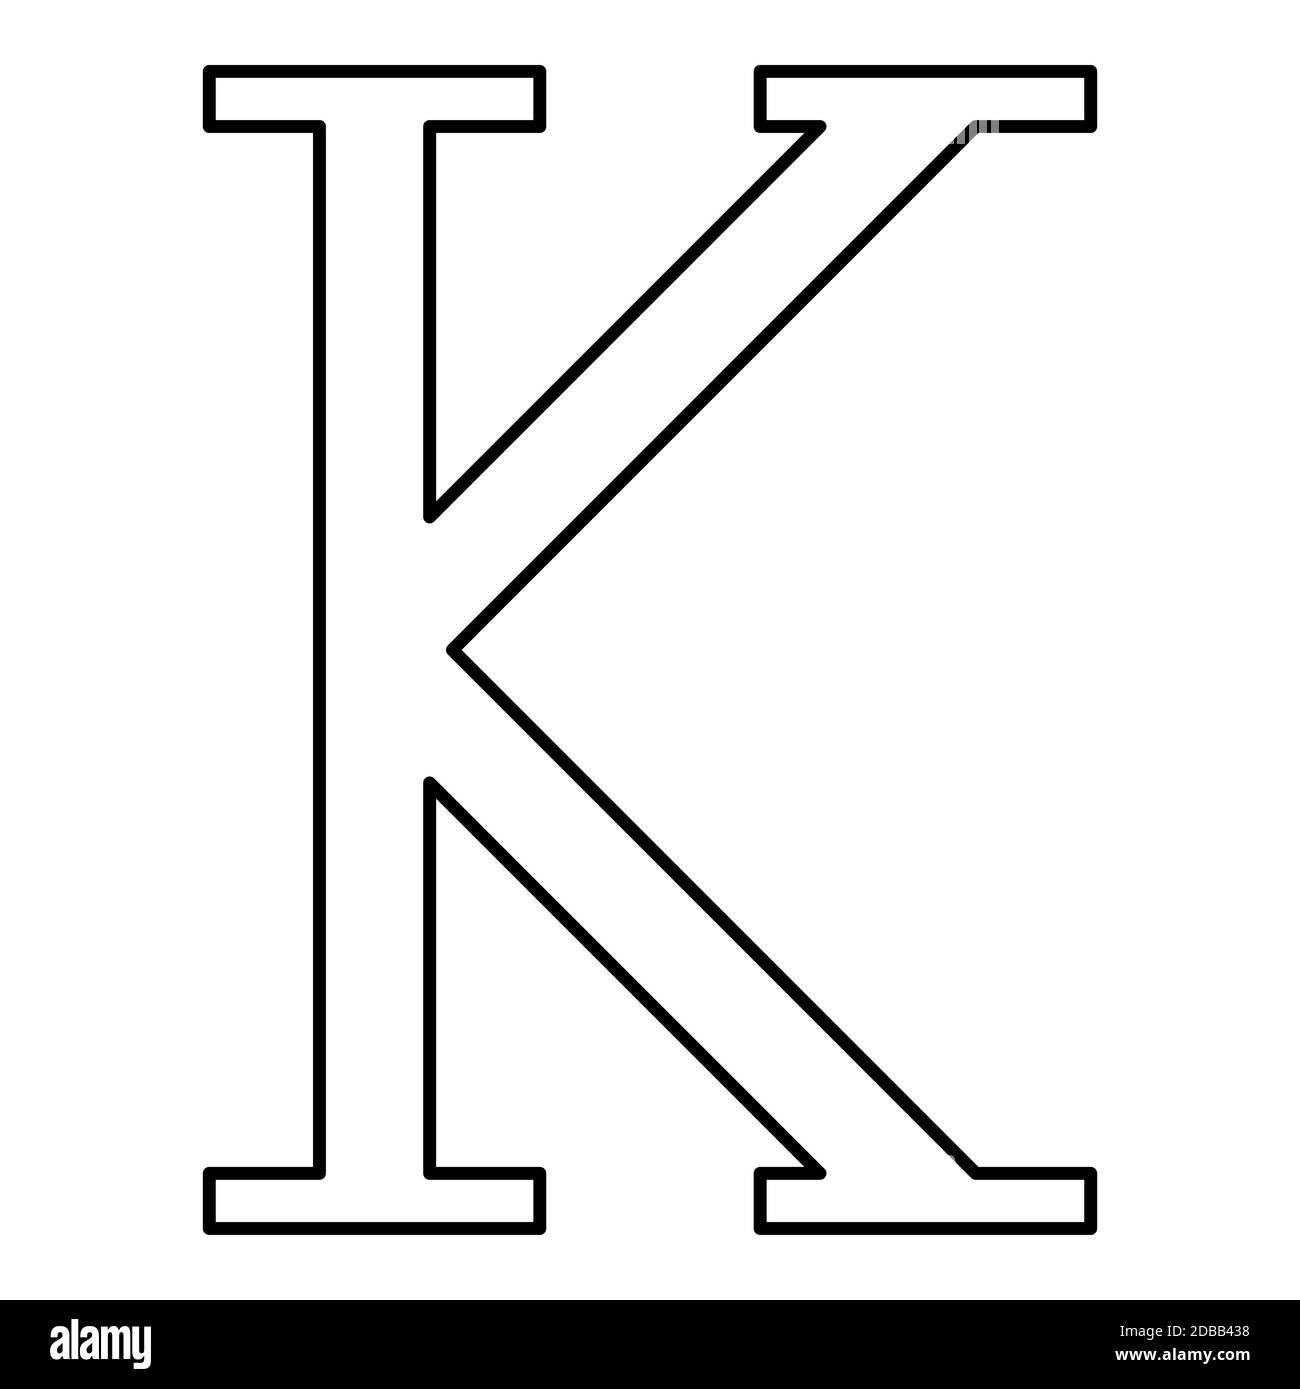 Kappa griechisch Symbol Großbuchstaben Großbuchstaben Schrift Symbol Umriss  schwarz Farbe Vektor Illustration flach Stil einfaches Bild Stockfotografie  - Alamy